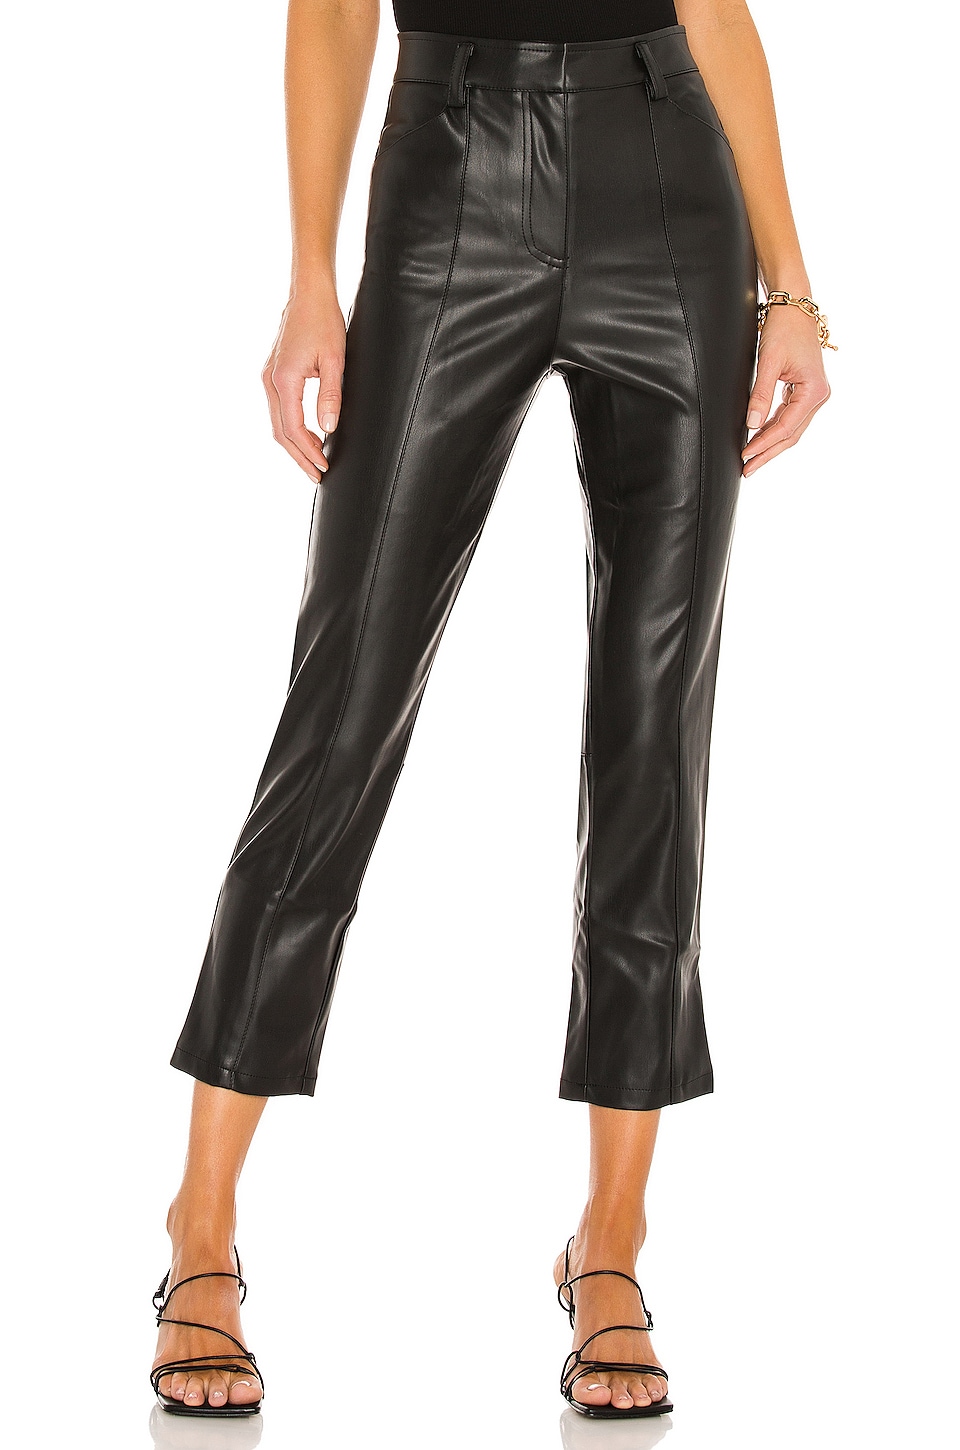 LBLC The Label Jen Faux Leather Trouser in Black